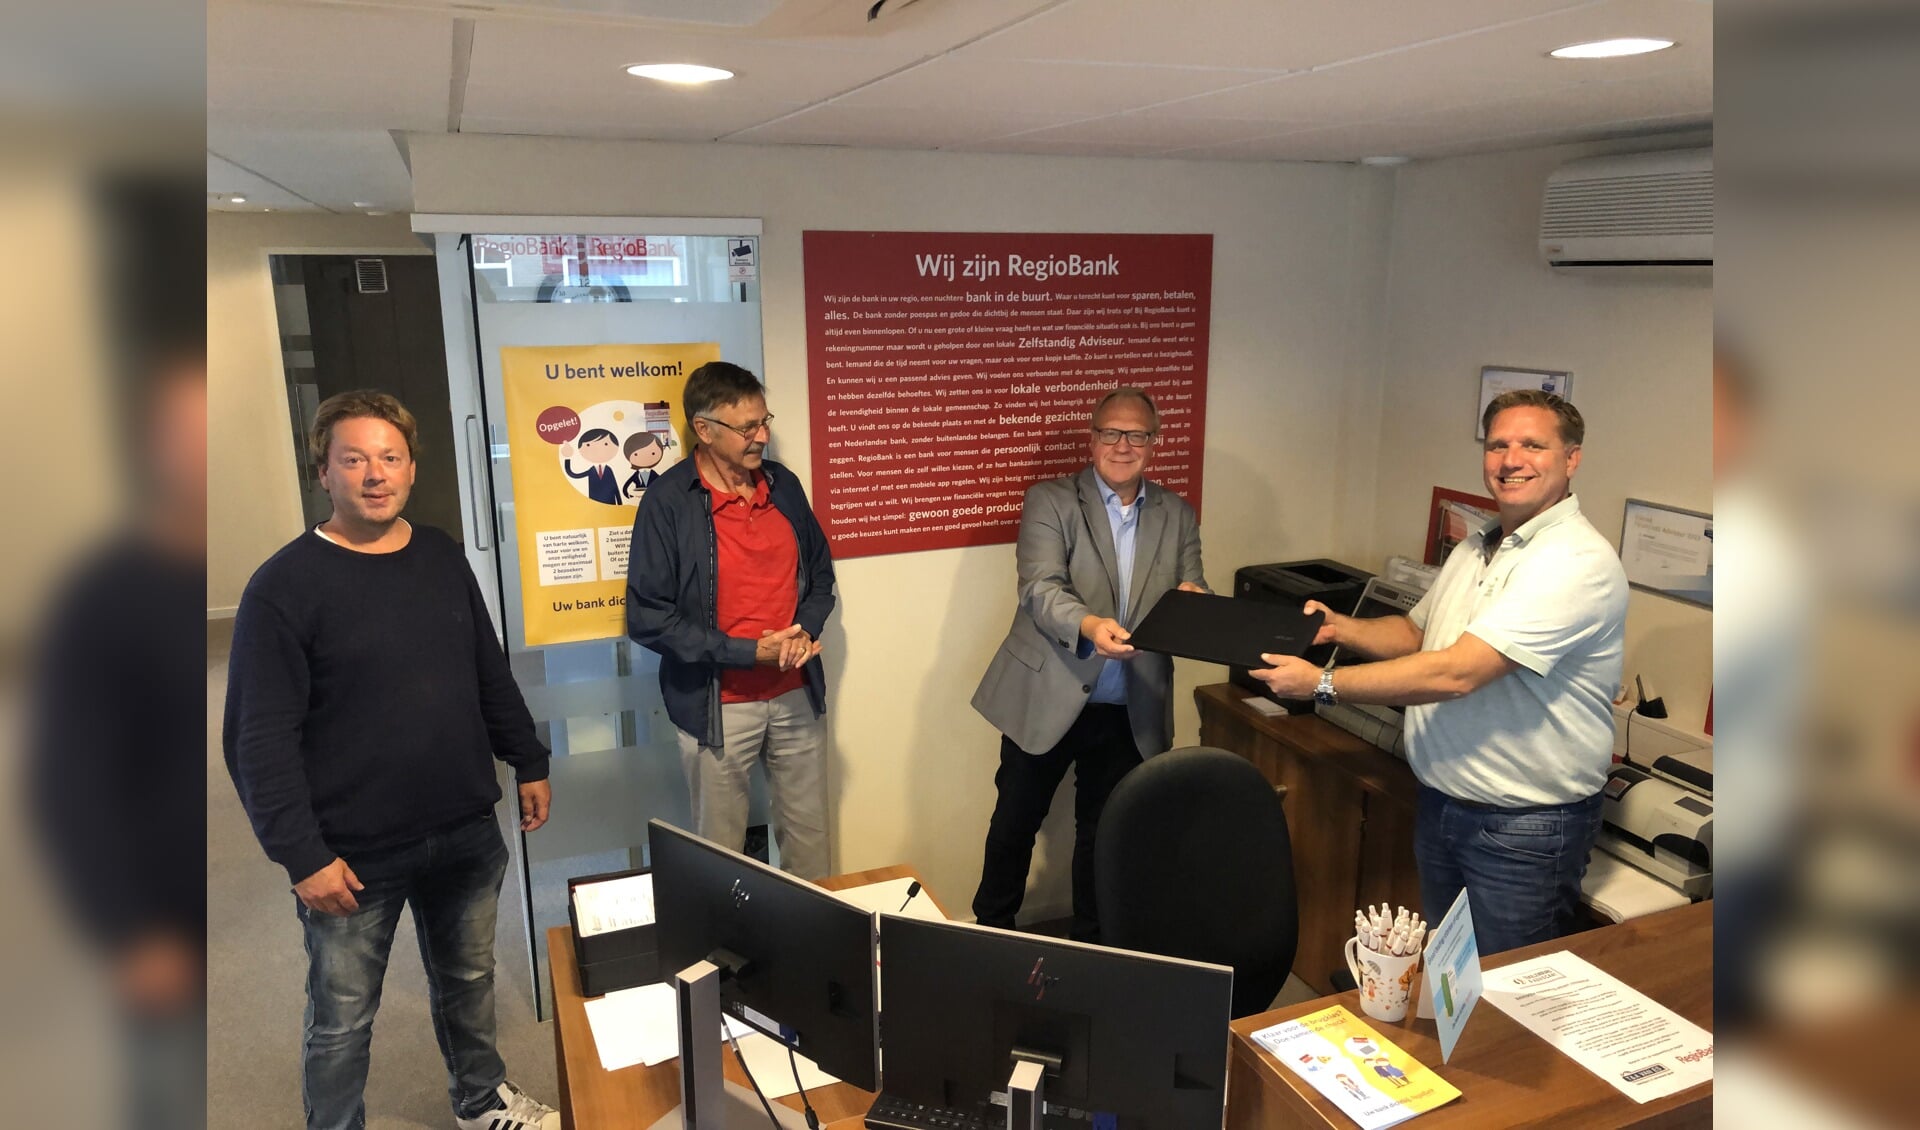 De overhandiging van de laptop, met Gerard Tekelenburg (Regiobank), Jacob van Vliet (voorzitter IDH), Henrie Pastoor (coördinator IDH) Andy Advocaat (Regiobank).